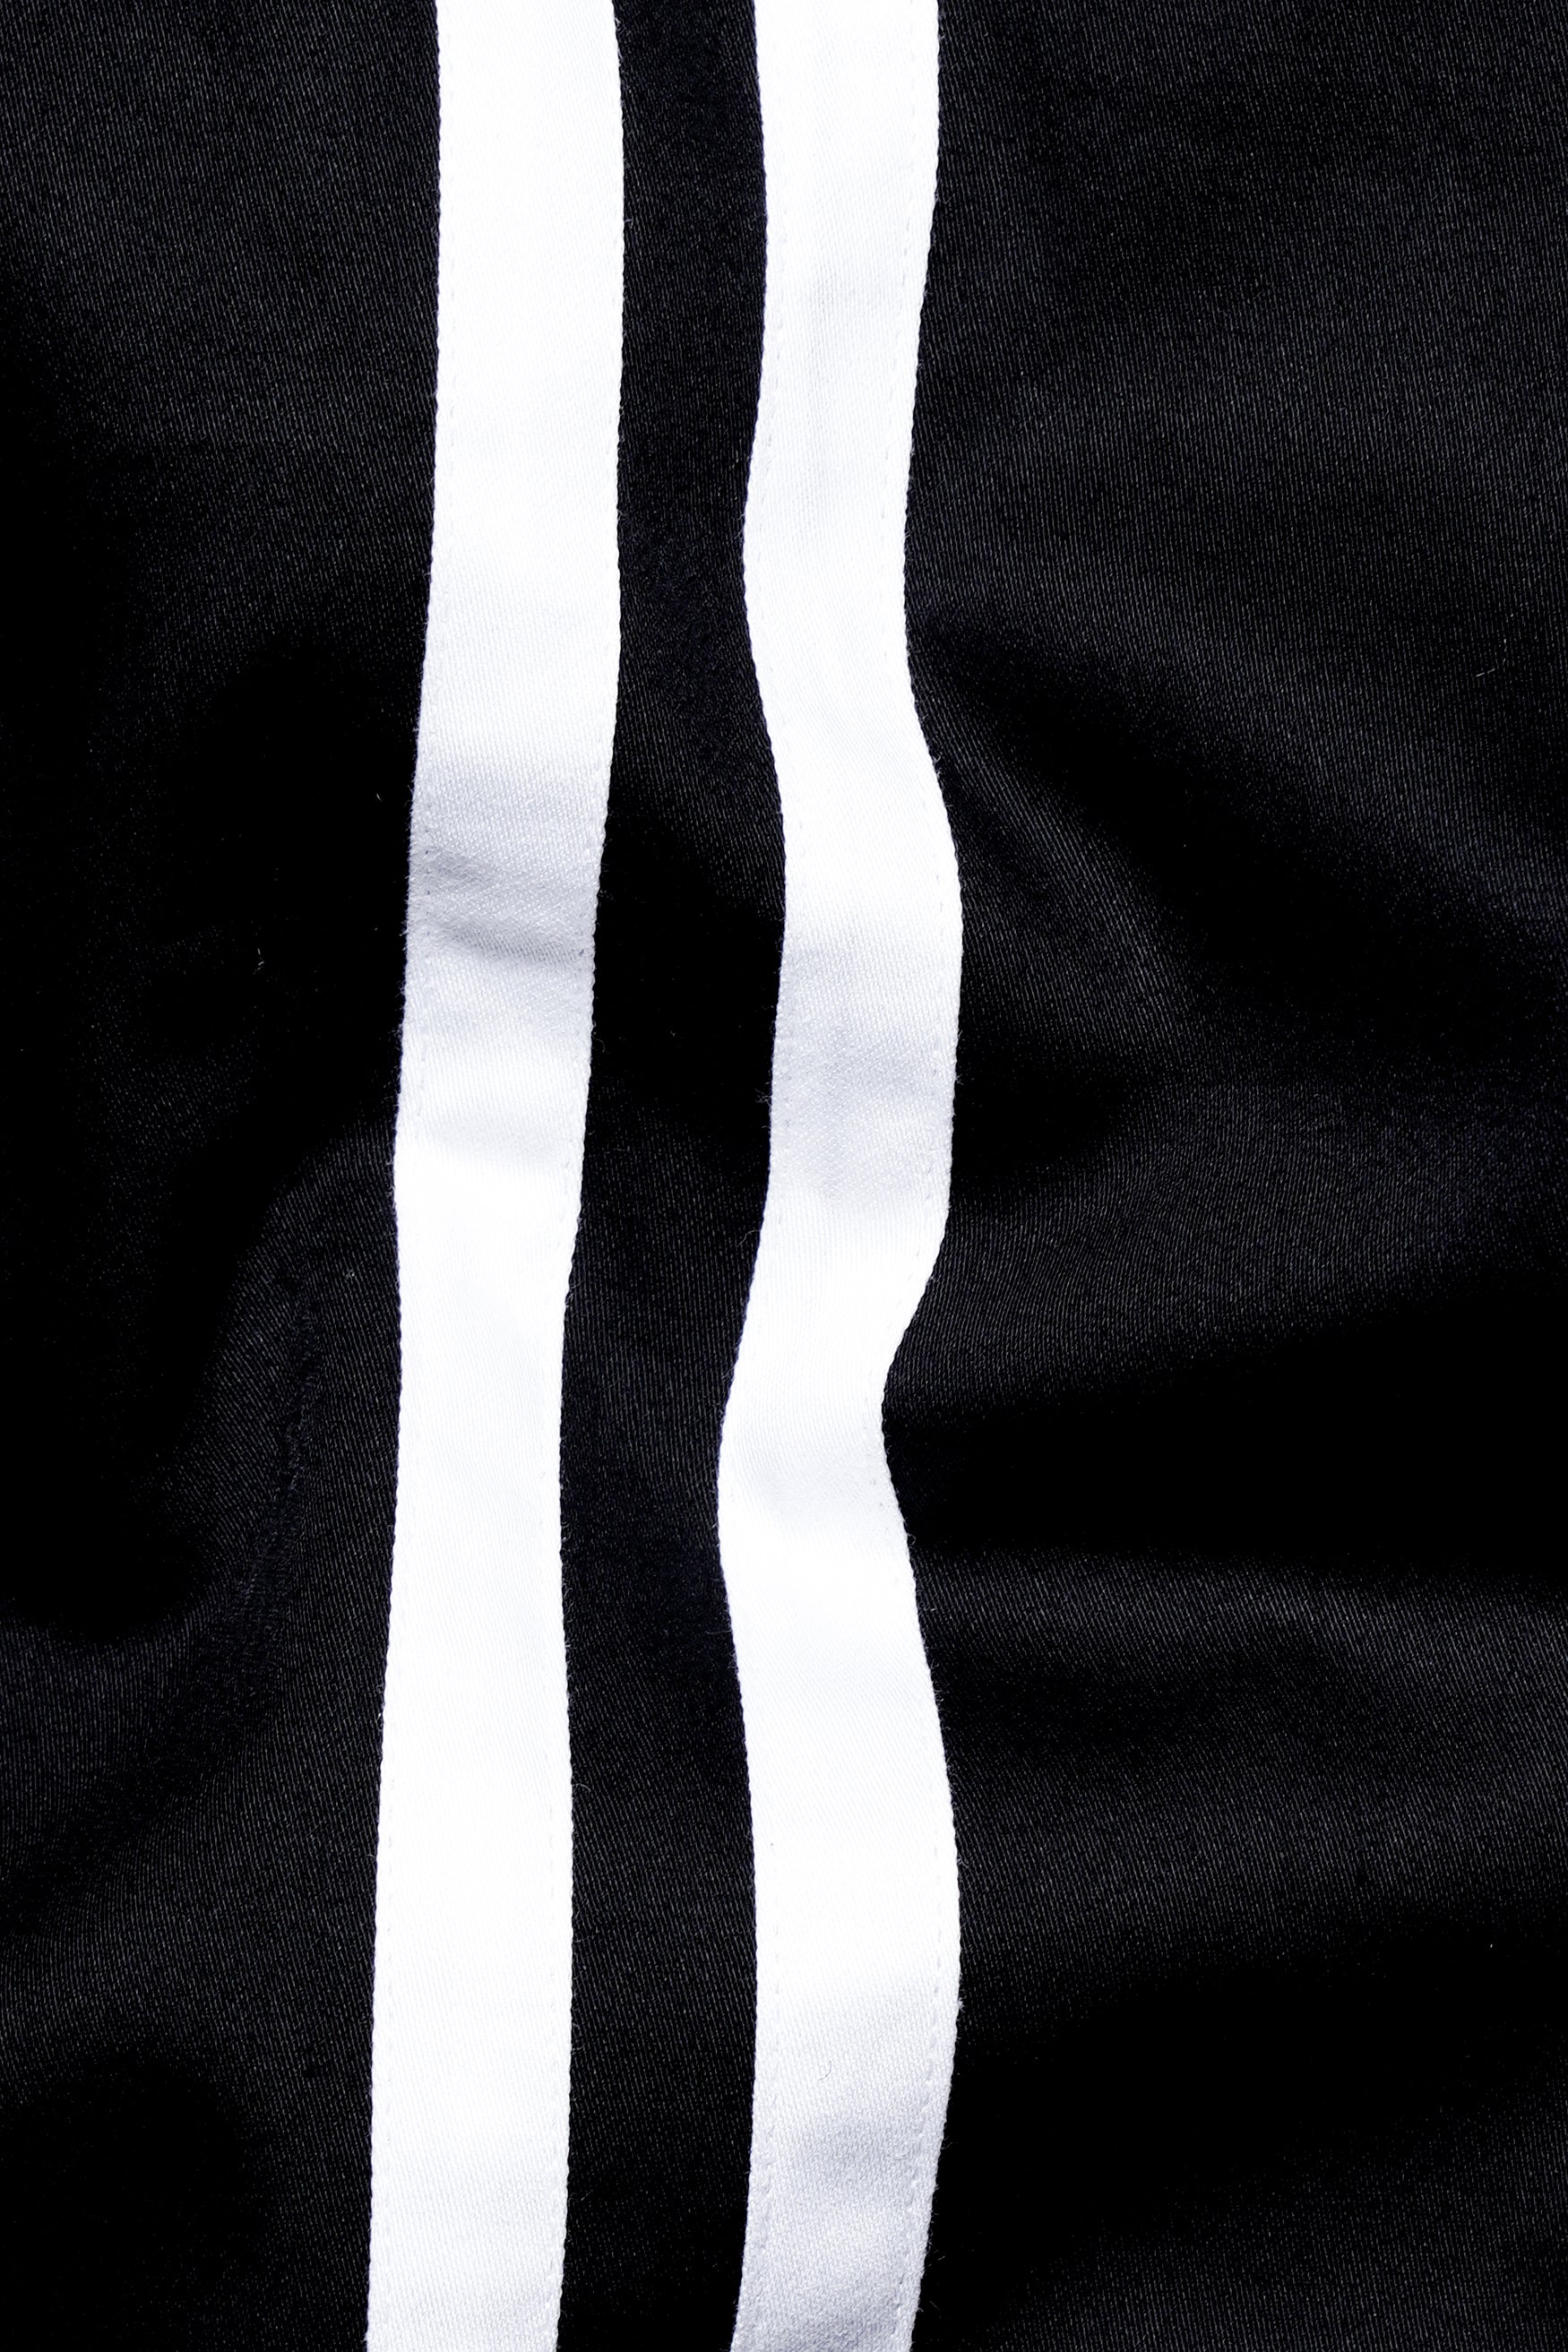 Jade Black with White Double Striped Super Soft Premium Cotton Shirt 5761-BLK-P120-38, 5761-BLK-P120-H-38, 5761-BLK-P120-39, 5761-BLK-P120-H-39, 5761-BLK-P120-40, 5761-BLK-P120-H-40, 5761-BLK-P120-42, 5761-BLK-P120-H-42, 5761-BLK-P120-44, 5761-BLK-P120-H-44, 5761-BLK-P120-46, 5761-BLK-P120-H-46, 5761-BLK-P120-48, 5761-BLK-P120-H-48, 5761-BLK-P120-50, 5761-BLK-P120-H-50, 5761-BLK-P120-52, 5761-BLK-P120-H-52